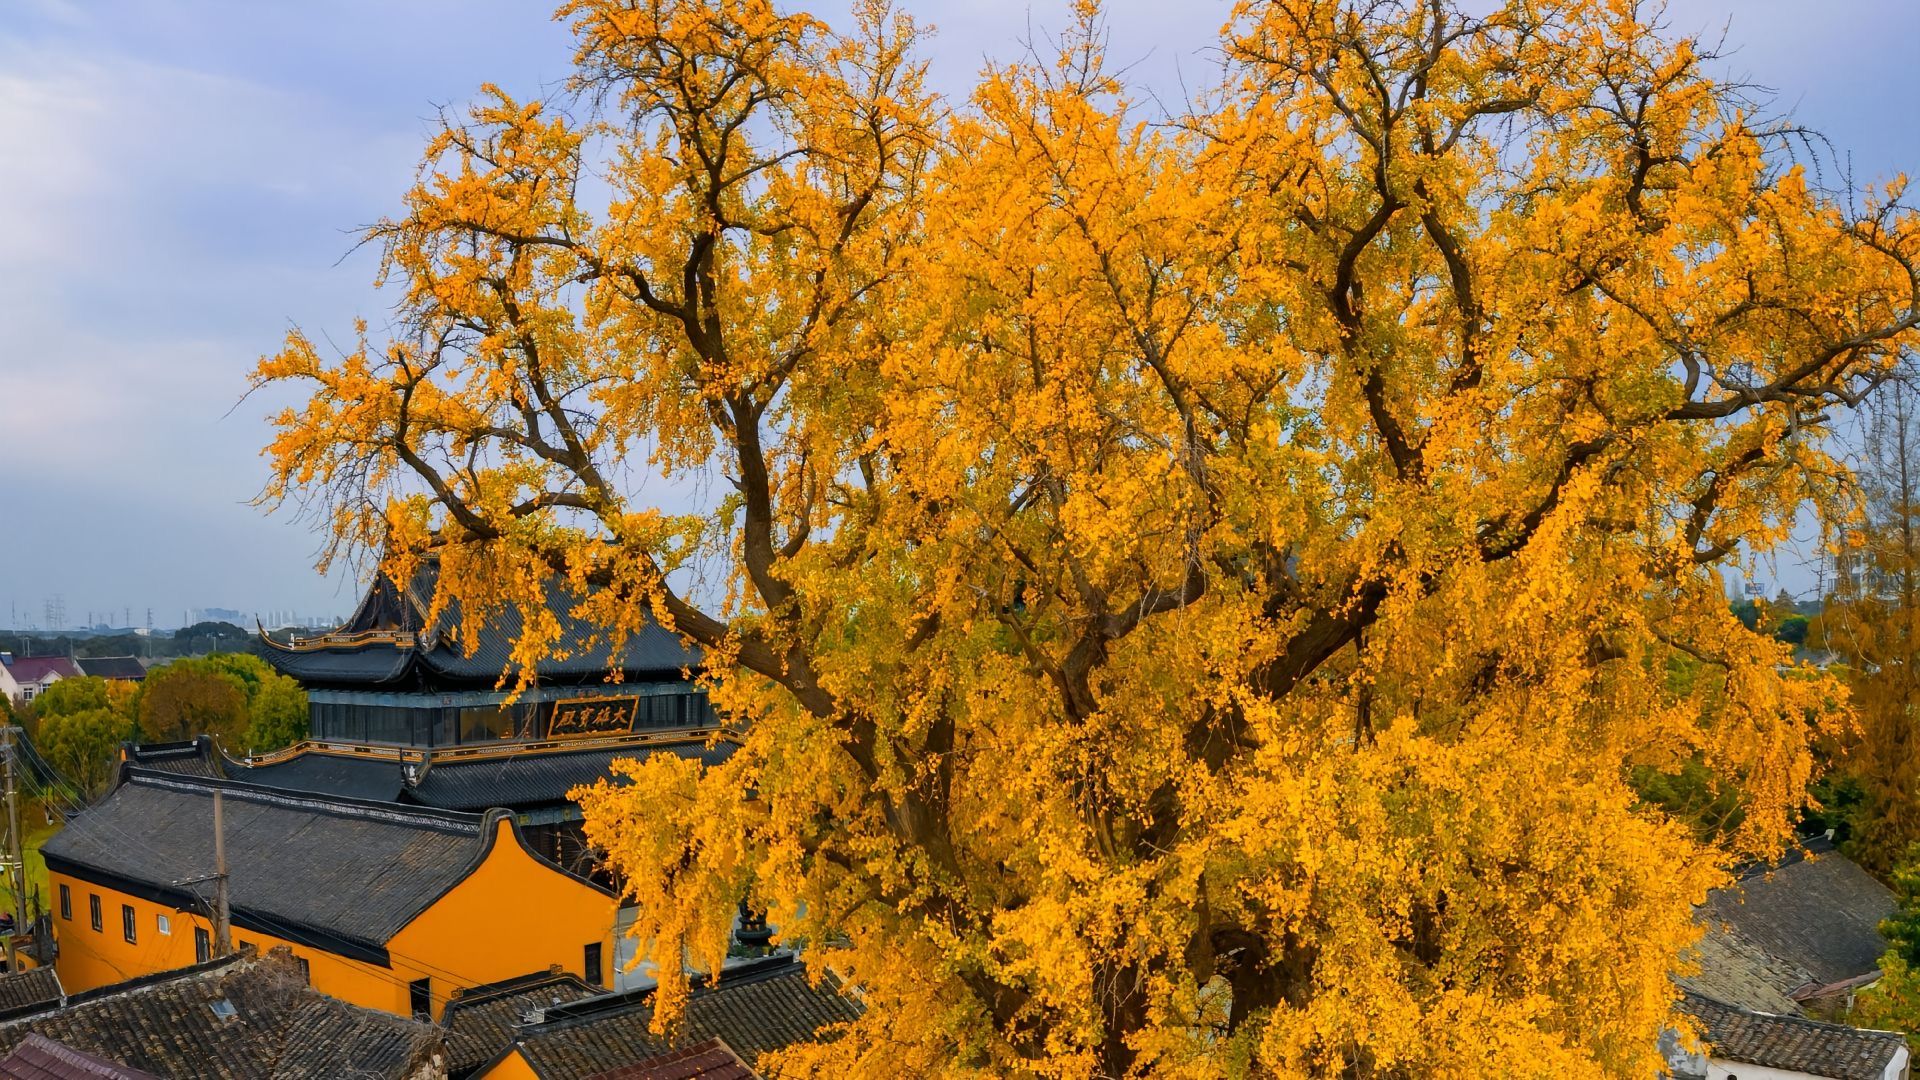 苏州相城太平禅寺千年古银杏树叶黄了,吸引无数游客前来拍照留影